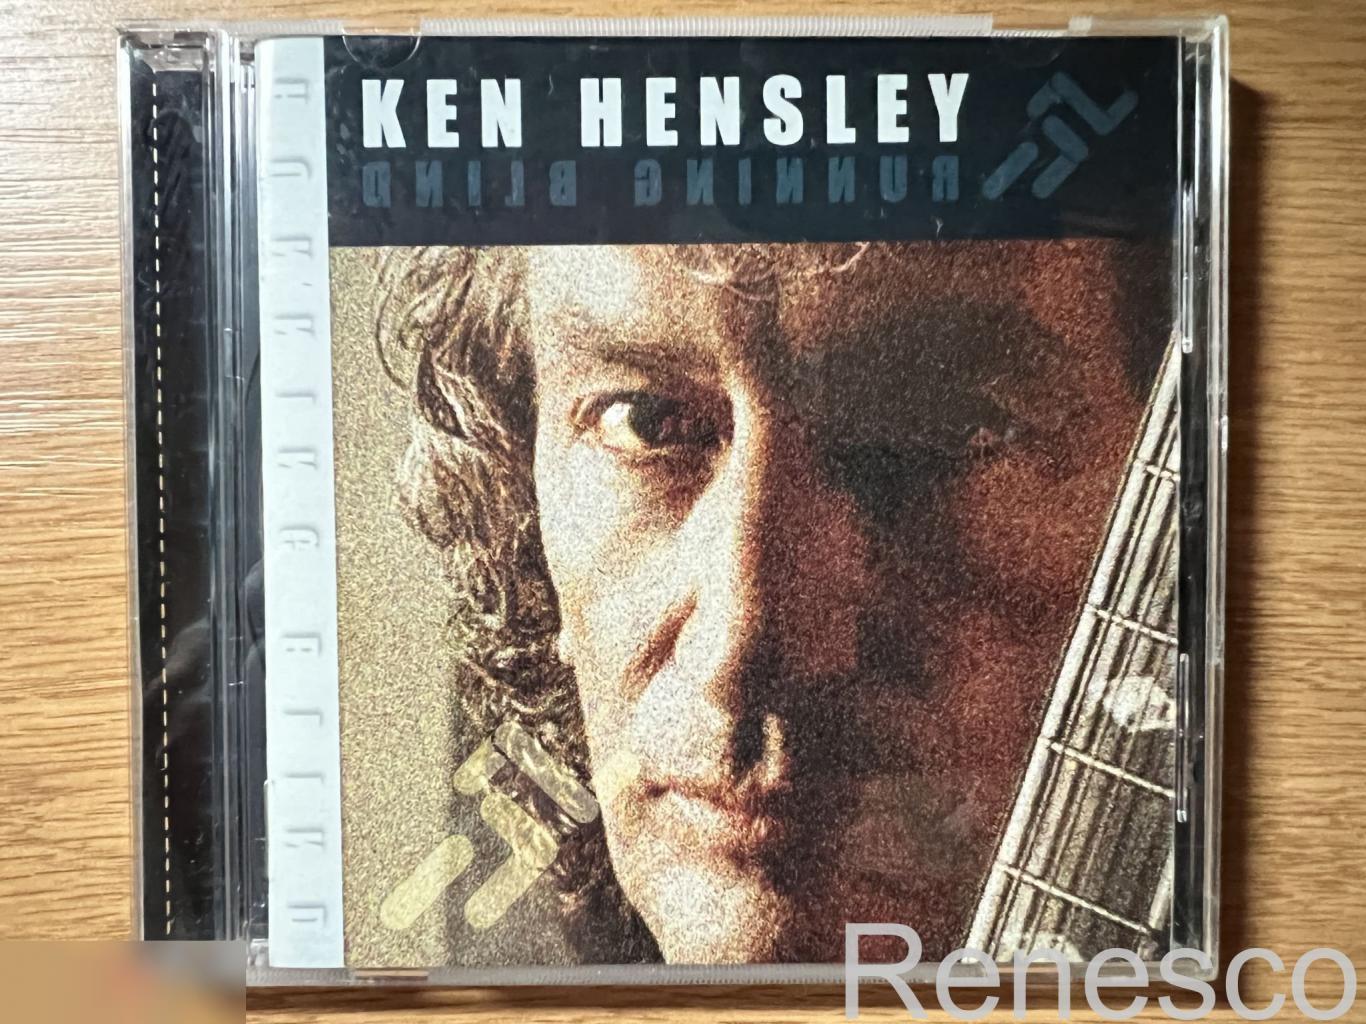 Ken Hensley – Running Blind (Russia) (2002)